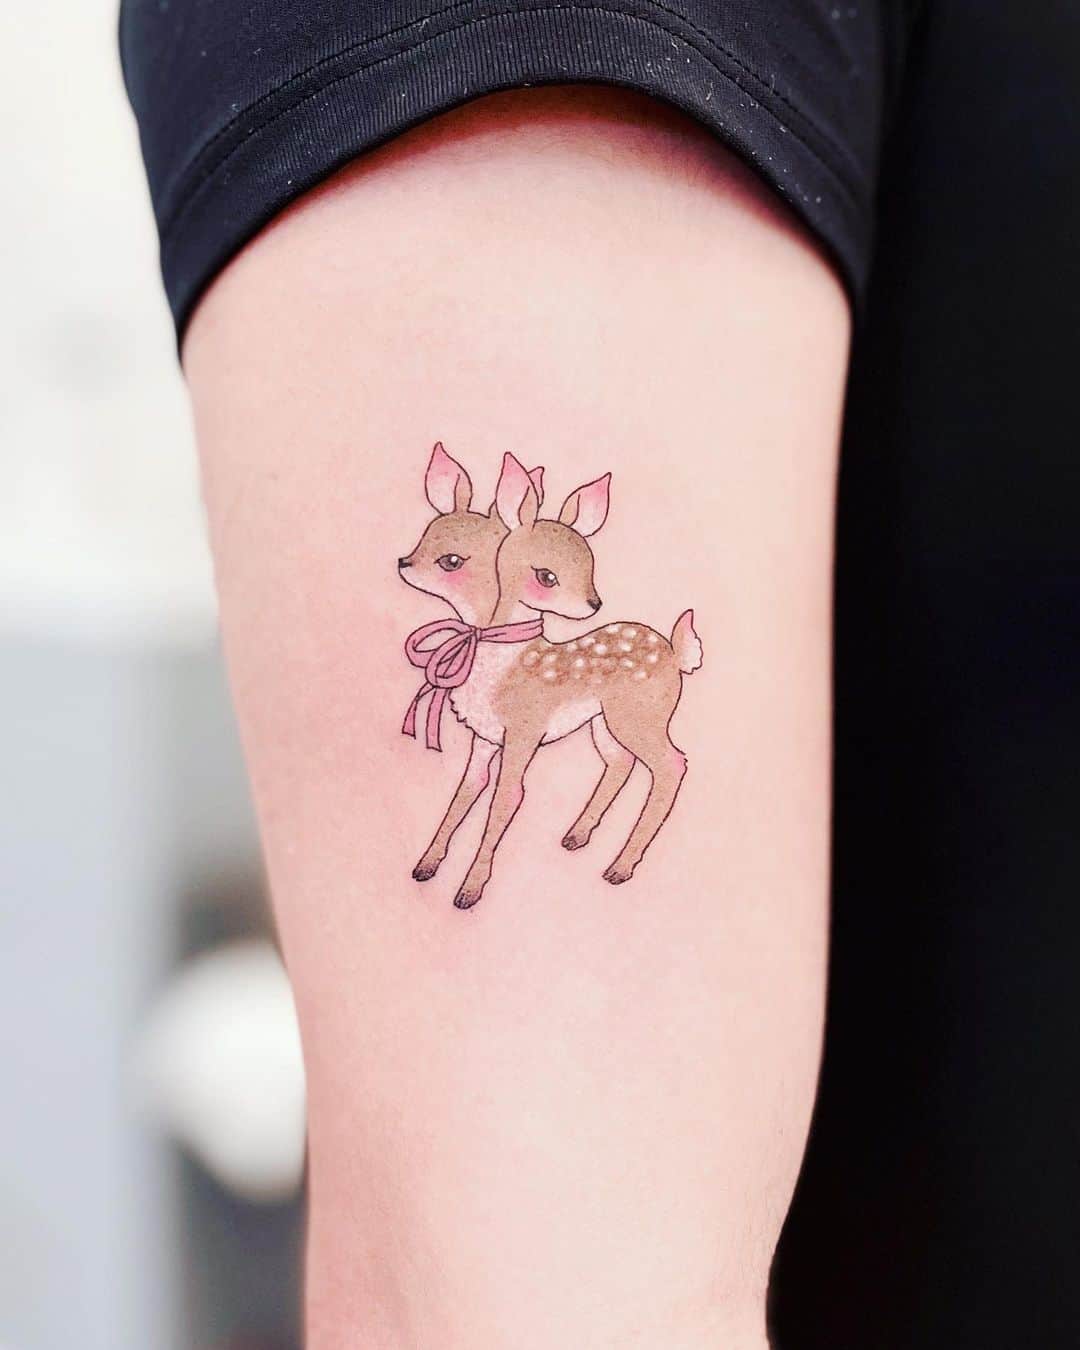 Deer tattoo small black and grey | Wrist tattoos for guys, Small tattoos  for guys, Small tattoos simple